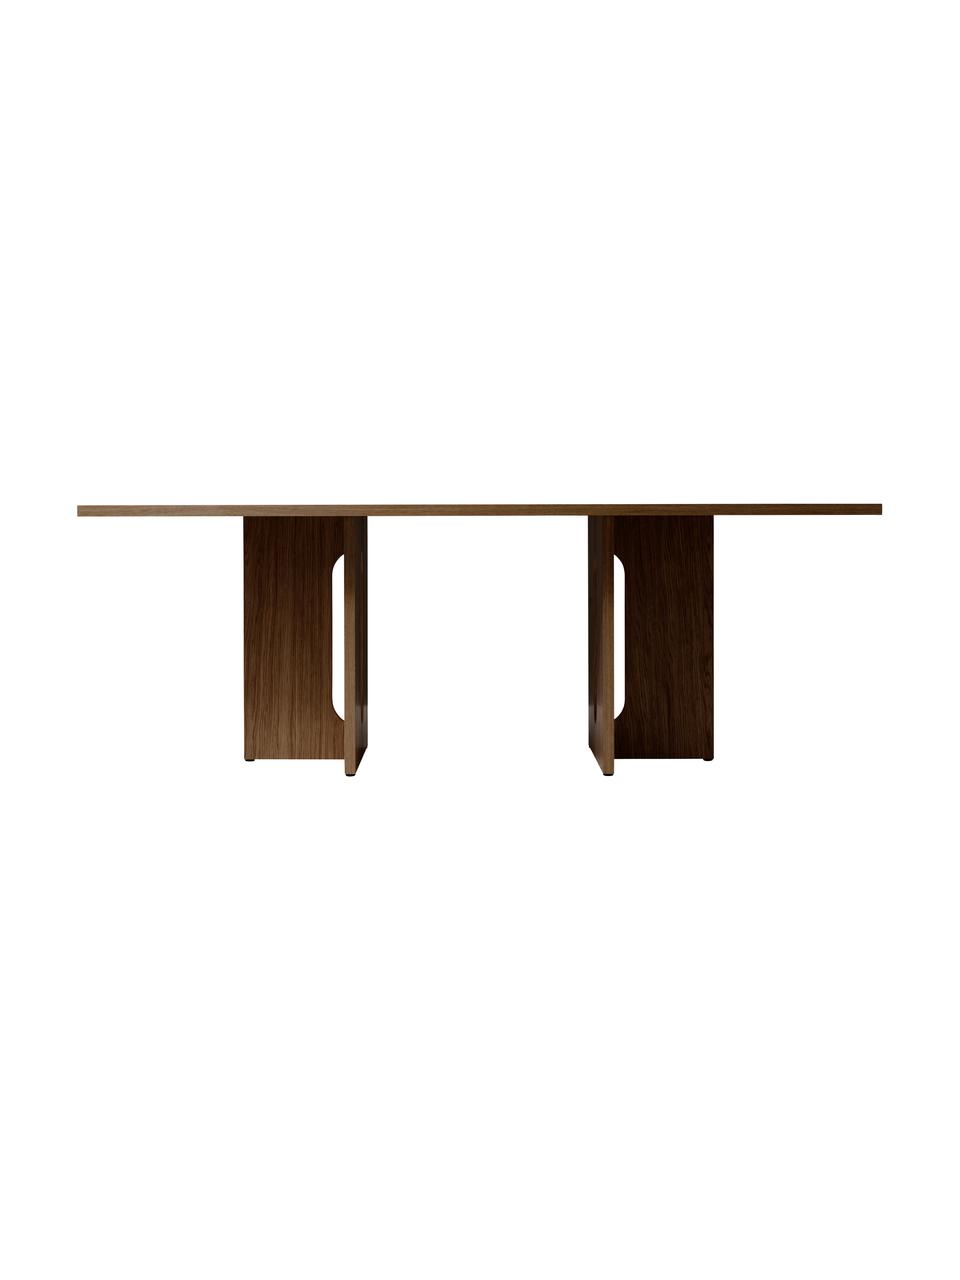 Jídelní stůl s tmavou dubovou dýhou Androgyne, MDF deska (dřevovláknitá deska střední hustoty) s dubovou dýhou, Dřevo, mořené na tmavo, Š 210 cm, H 110 cm